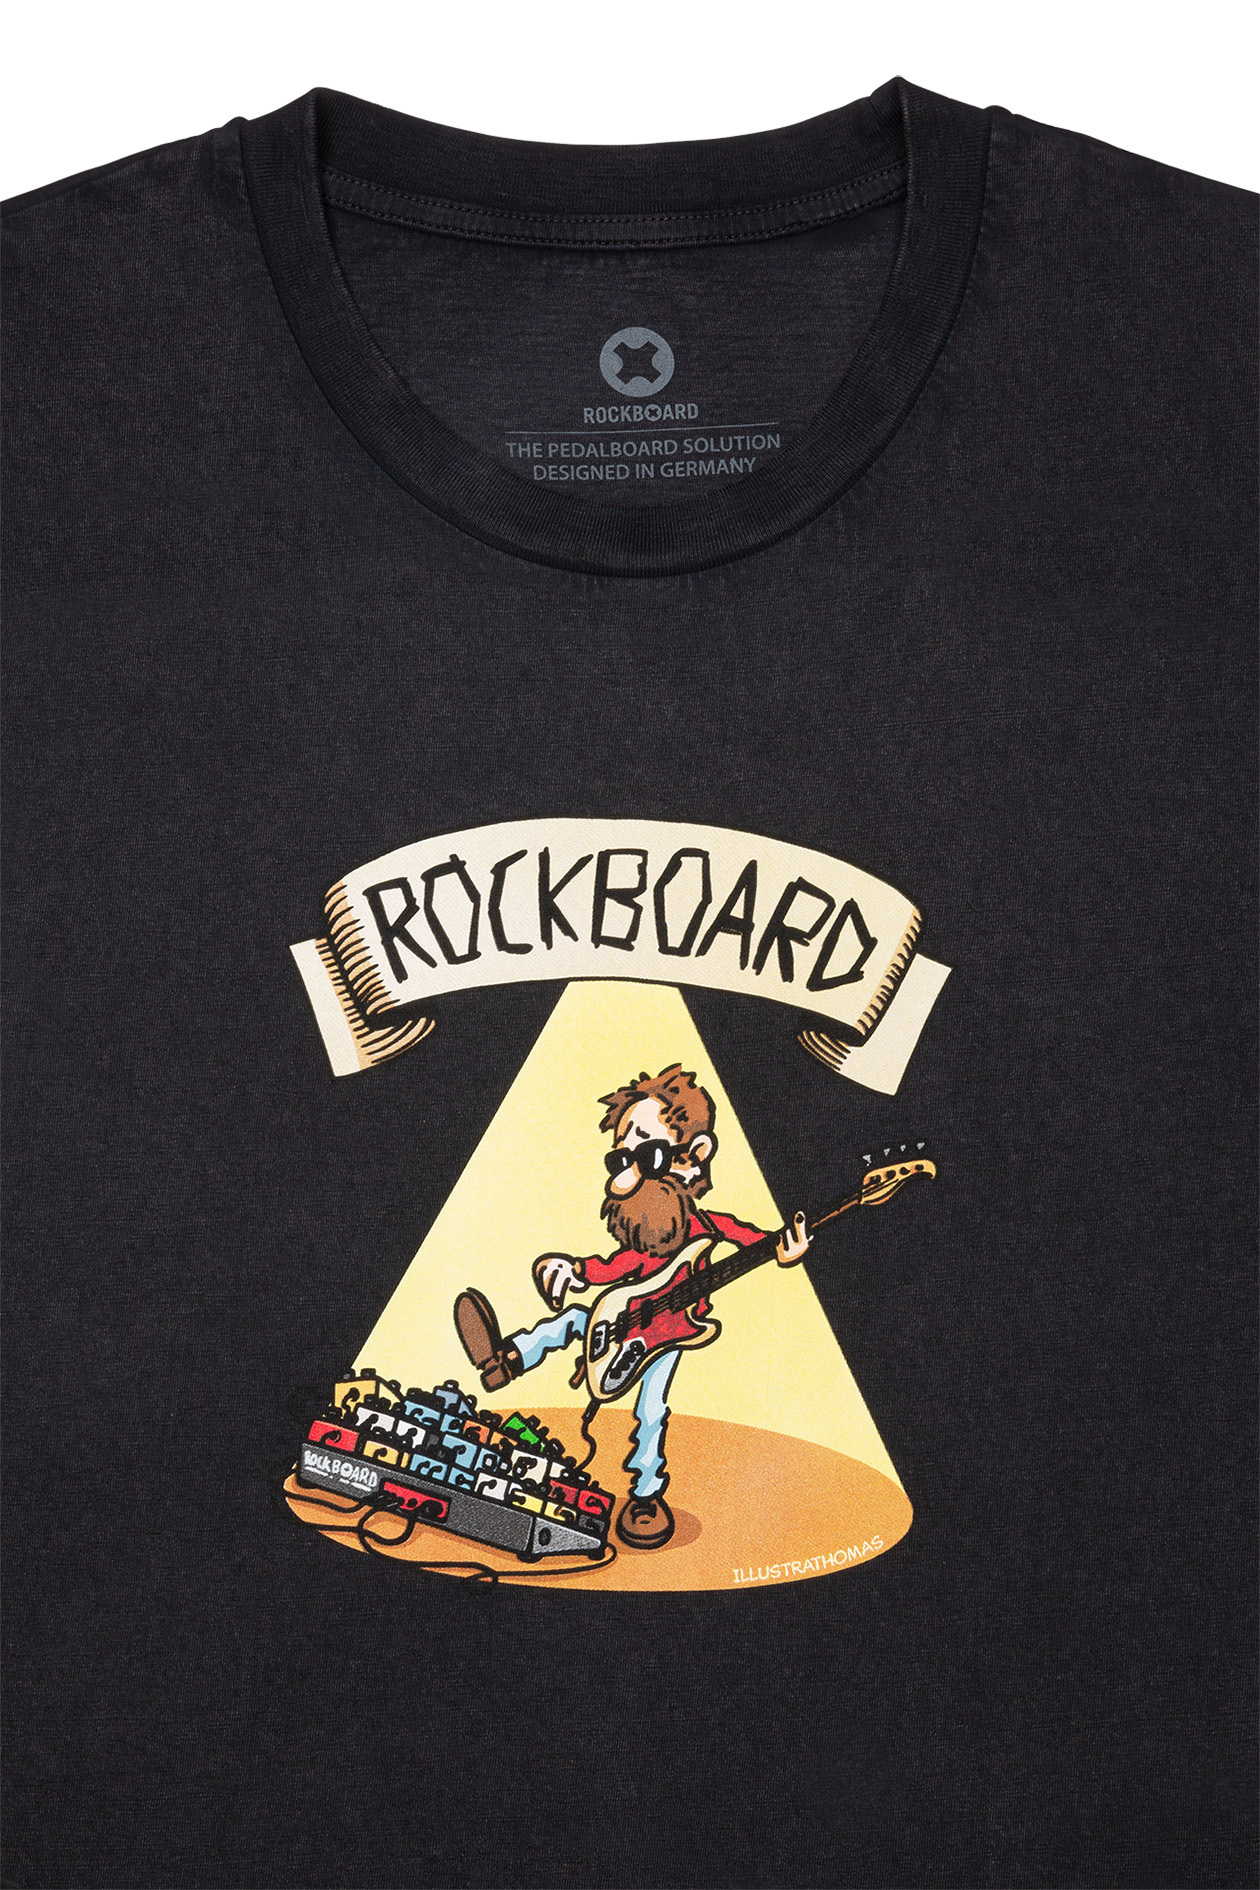 RockBoard - Black - Size M